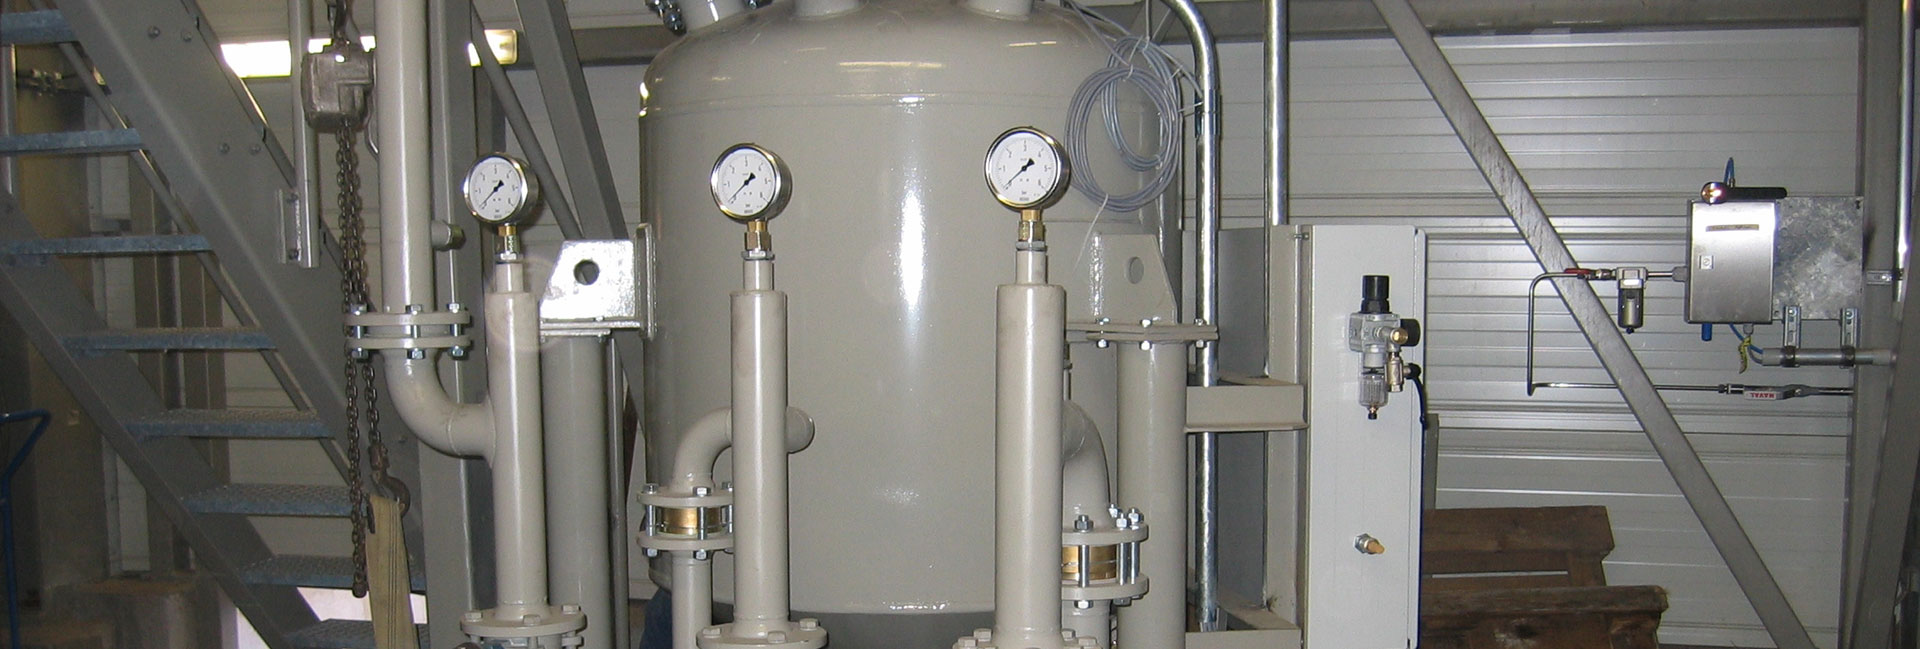 Pressure-vessel conveyors